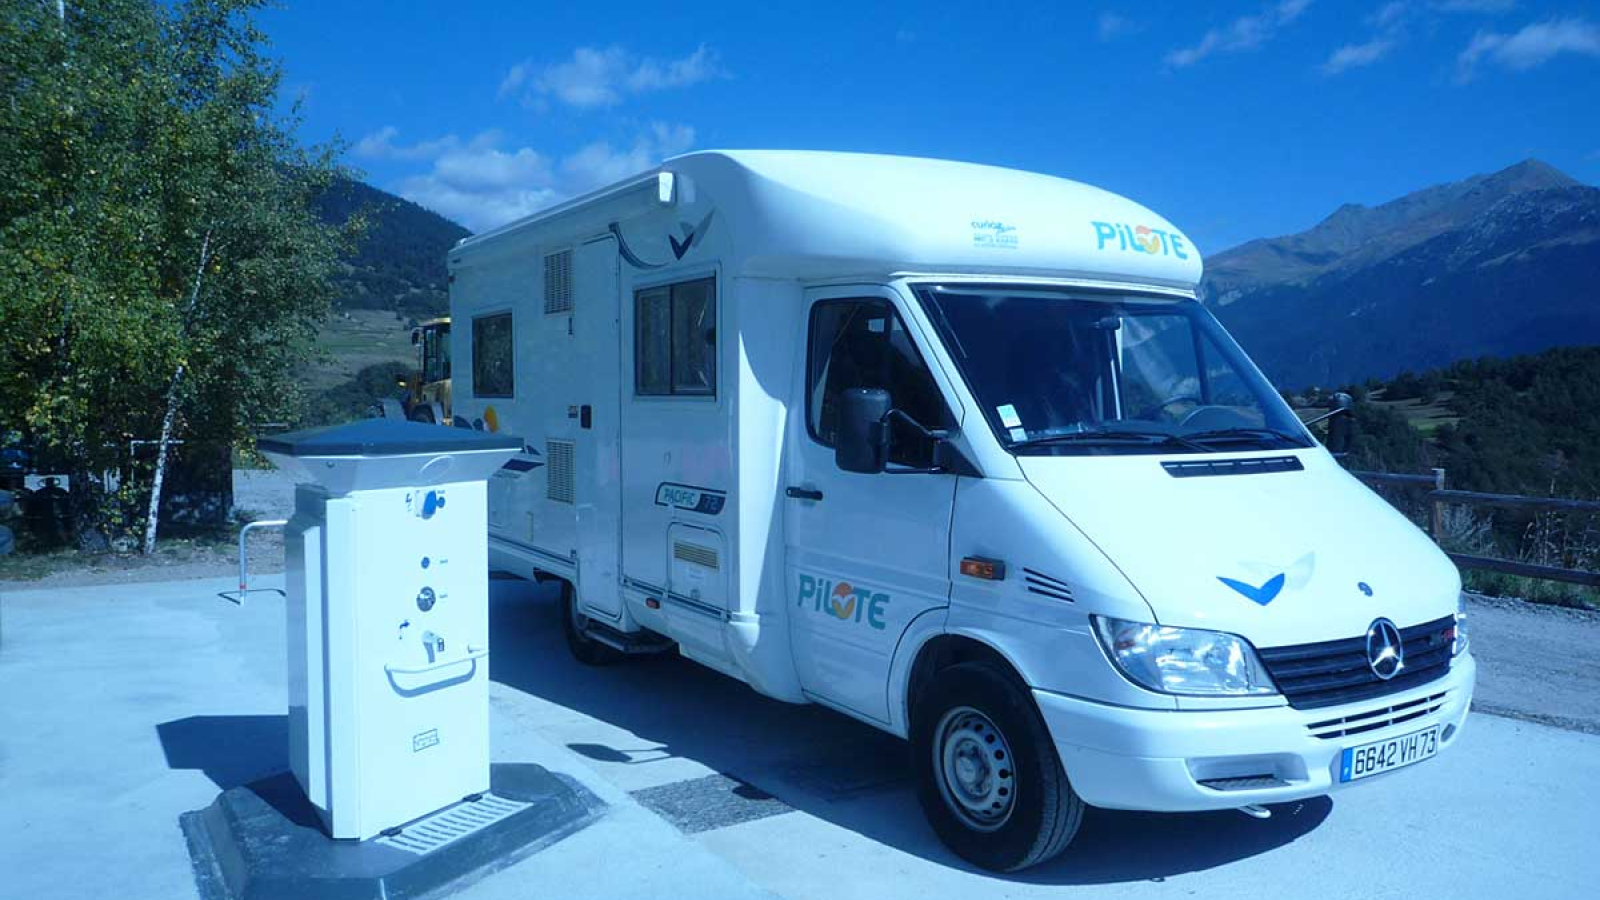 Borne Eurorelais pour camping-cars à Aussois